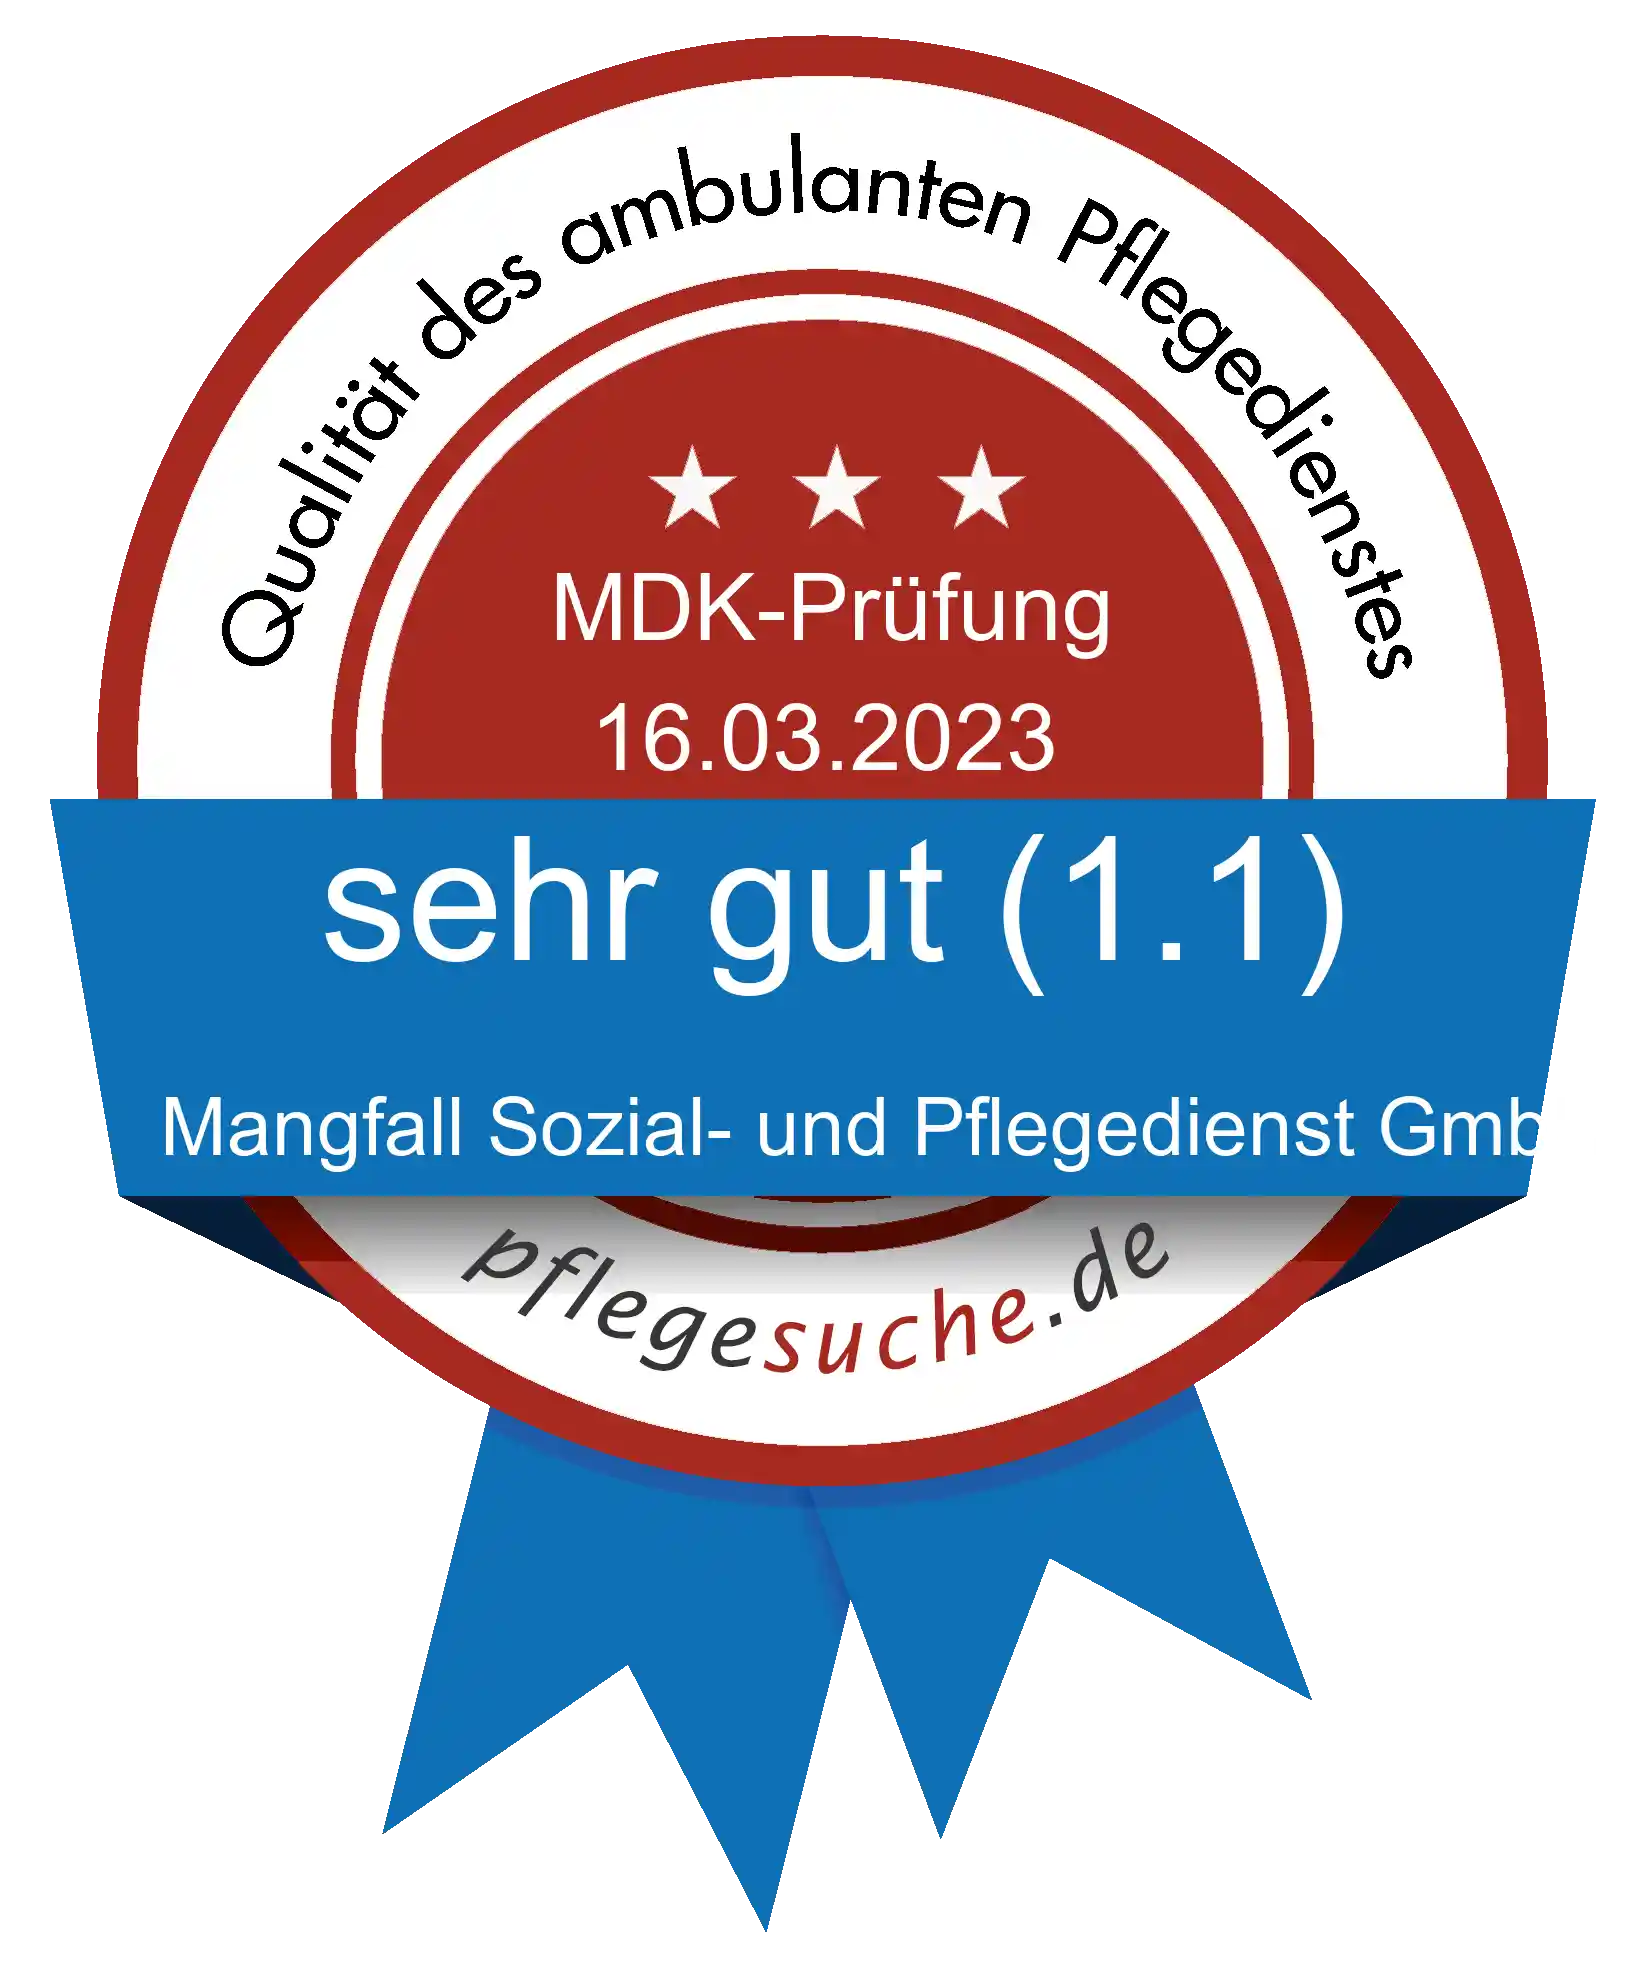 Siegel Benotung: Mangfall Sozial- und Pflegedienst GmbH